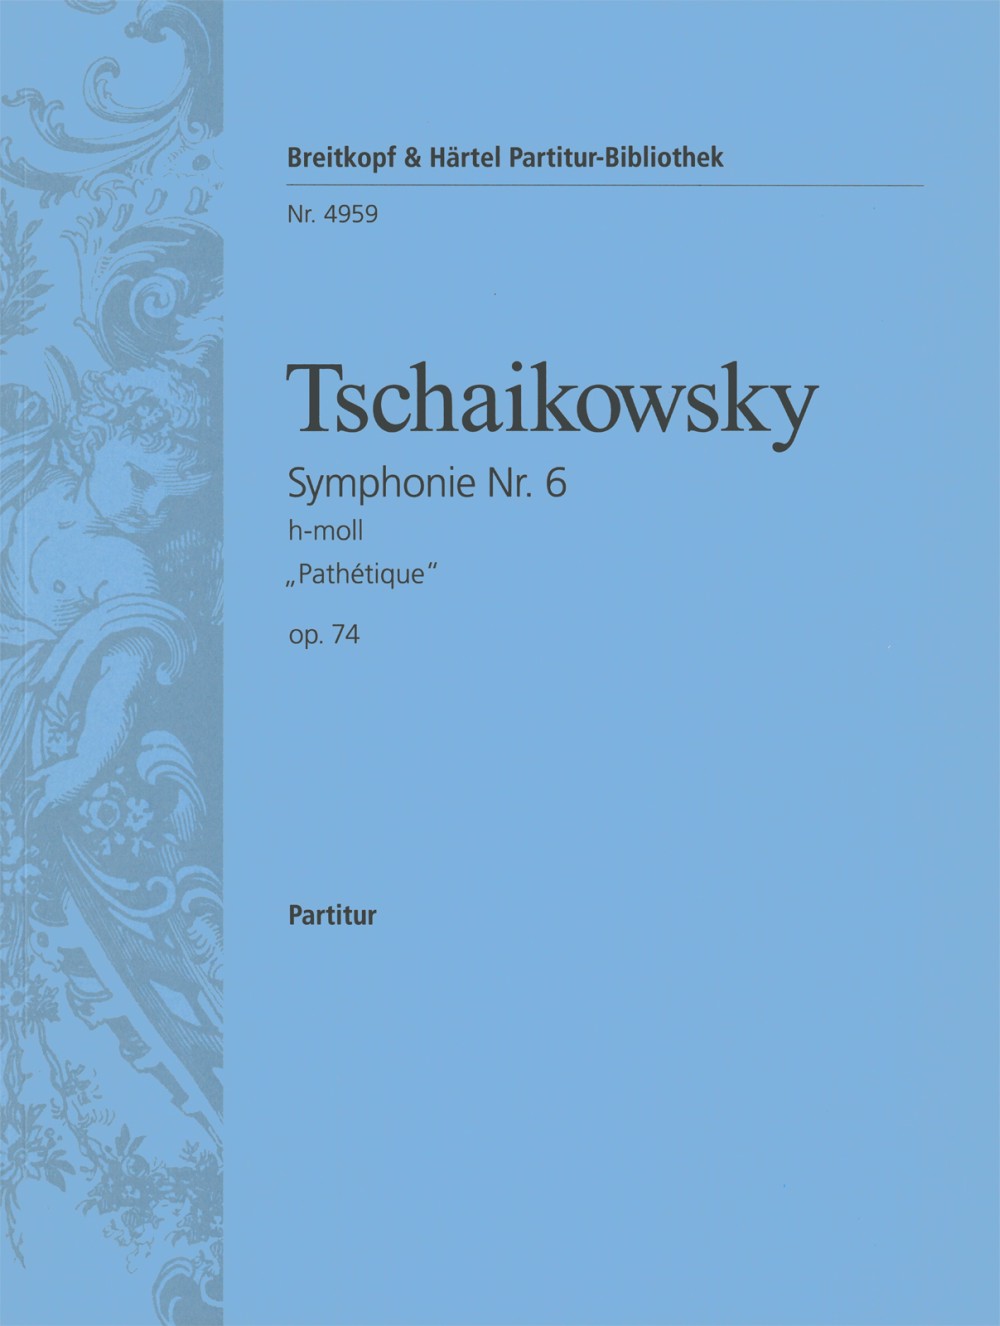 Tchaikovsky Symphony No. 6 in B minor Op. 74 (Pathetique)